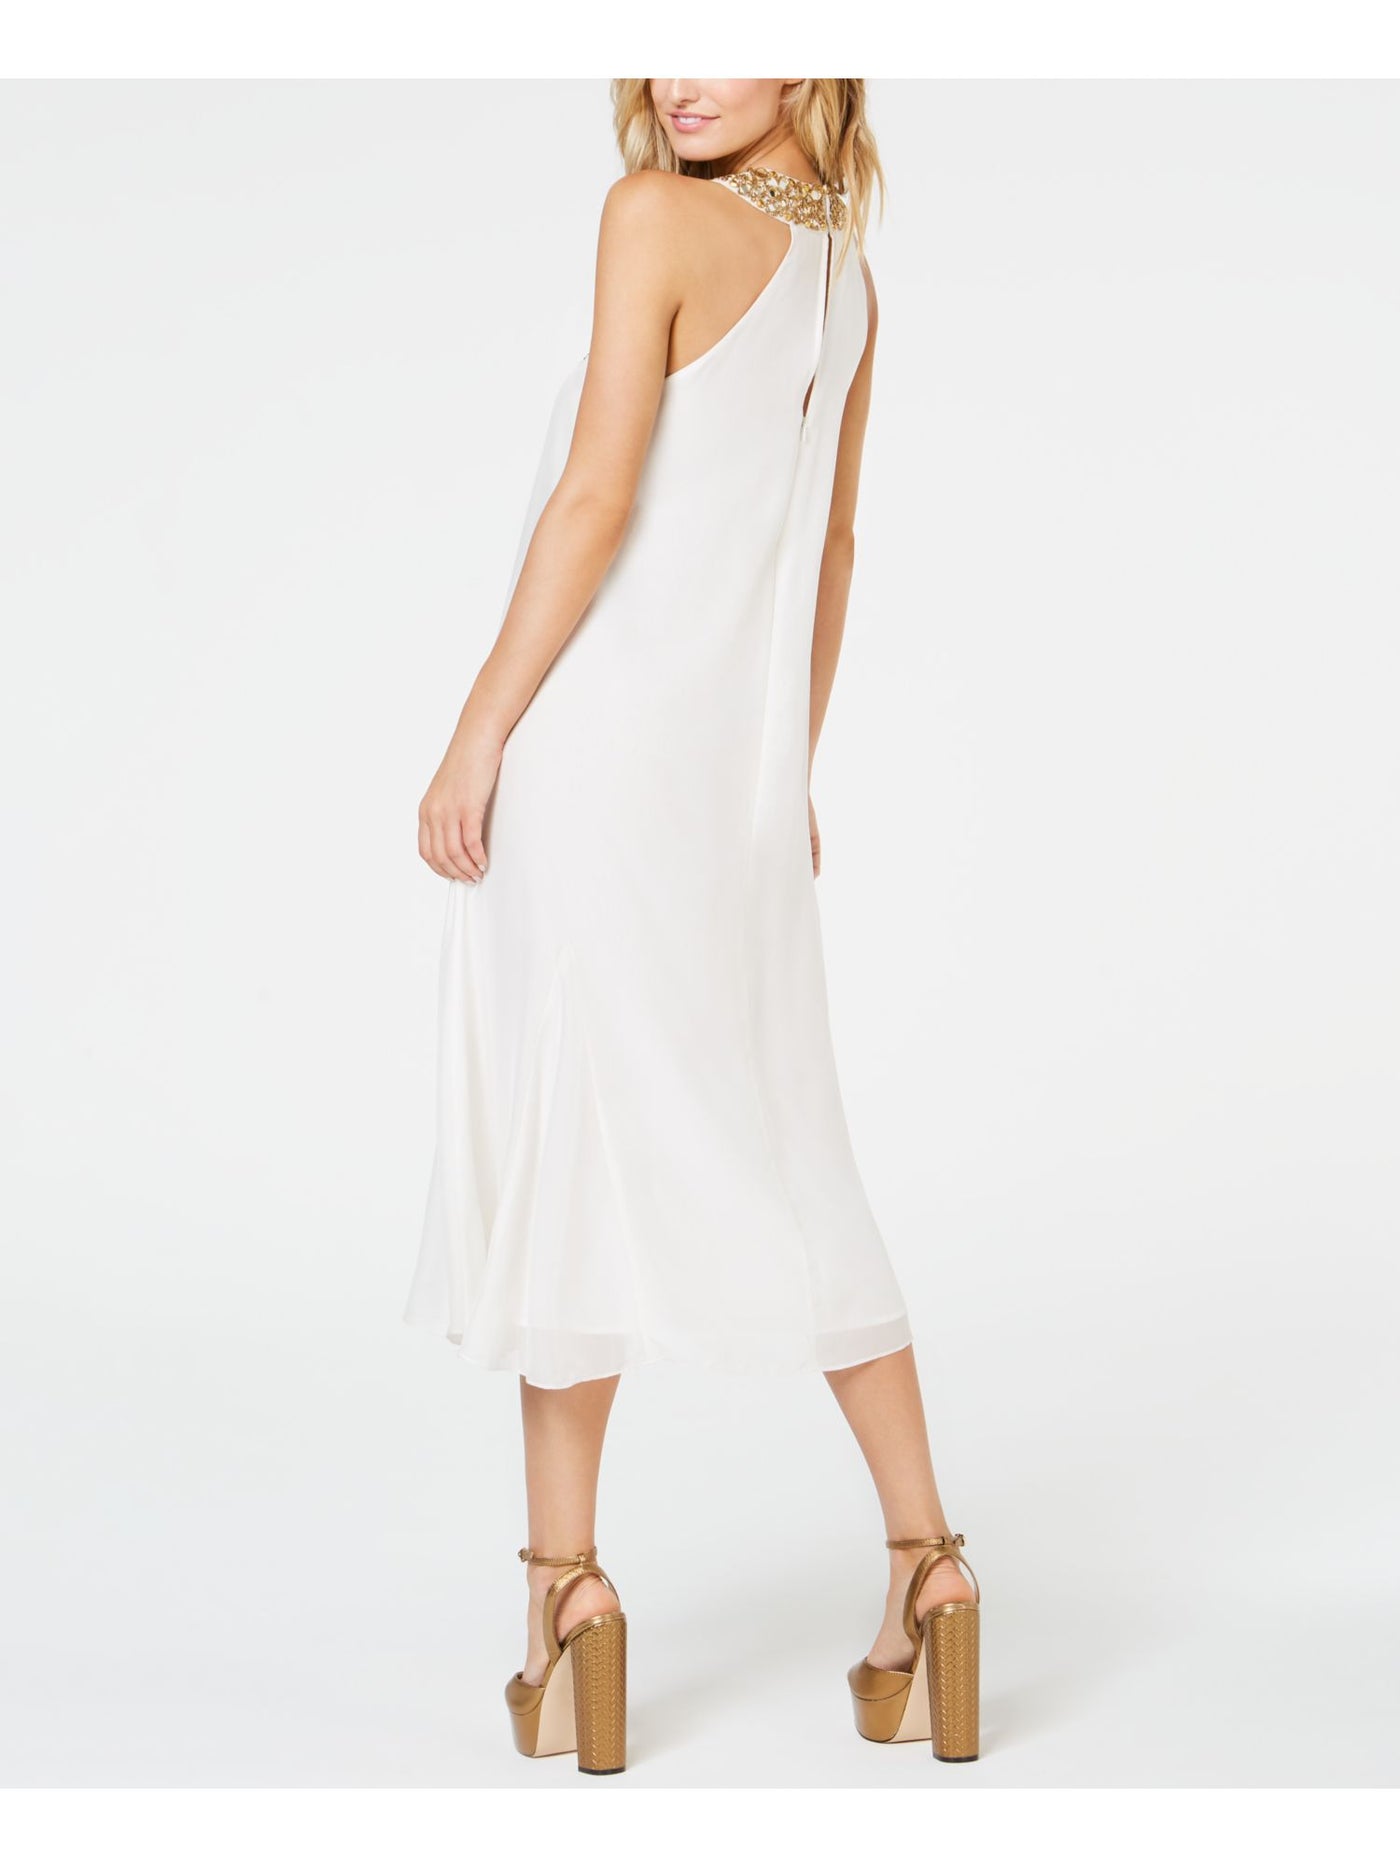 RACHEL ZOE Womens White Embellished Sleeveless Halter Midi Formal Shift Dress 6